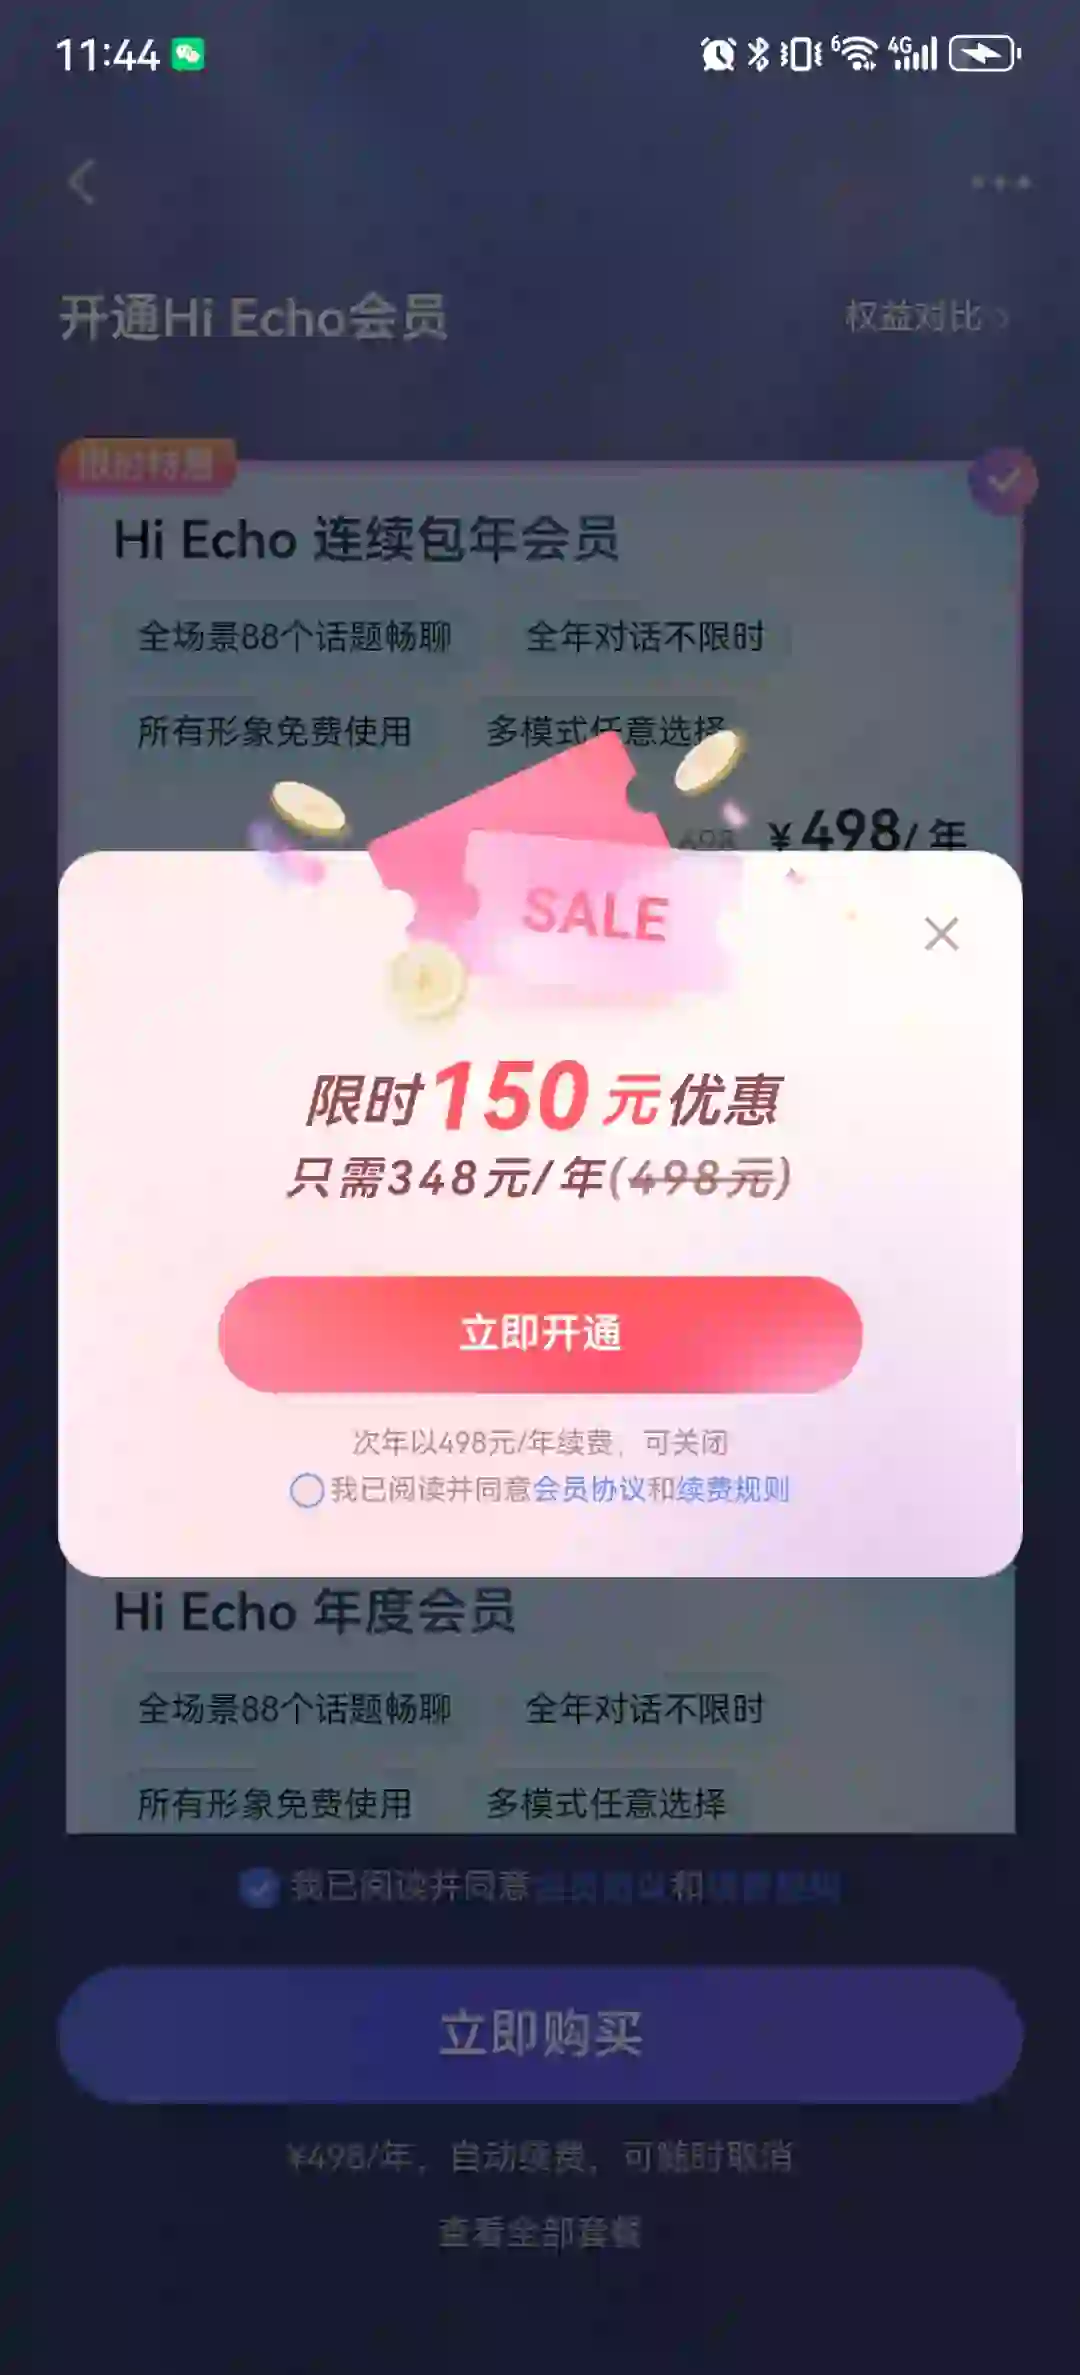 练口语Ai软件Hi Echo只要348元有必要吗？